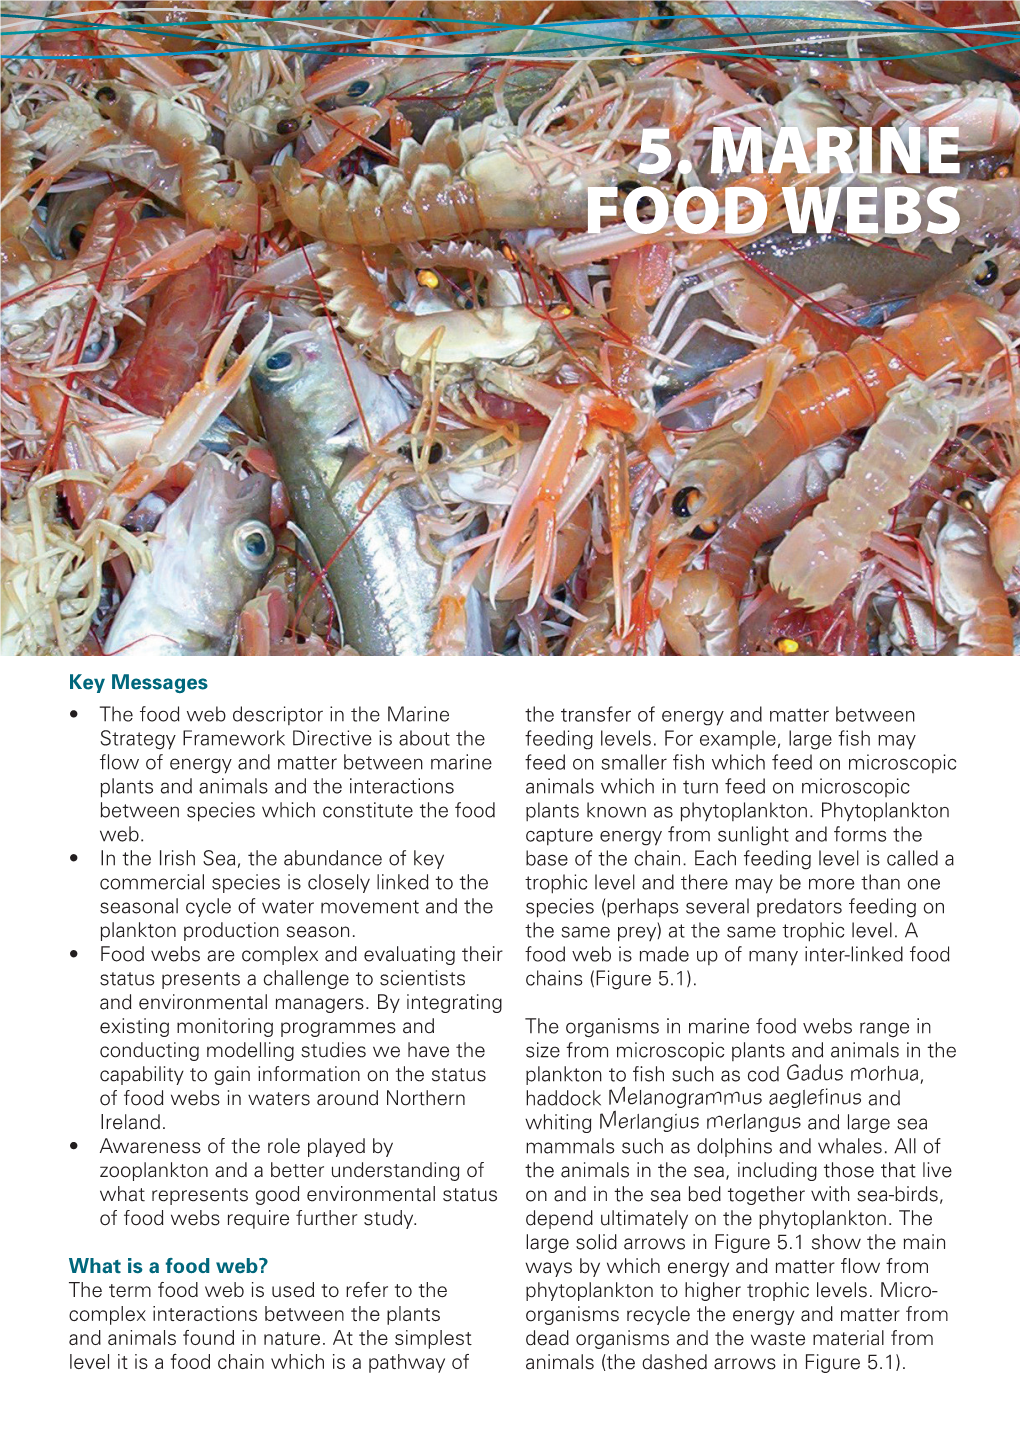 5. Marine Food Webs